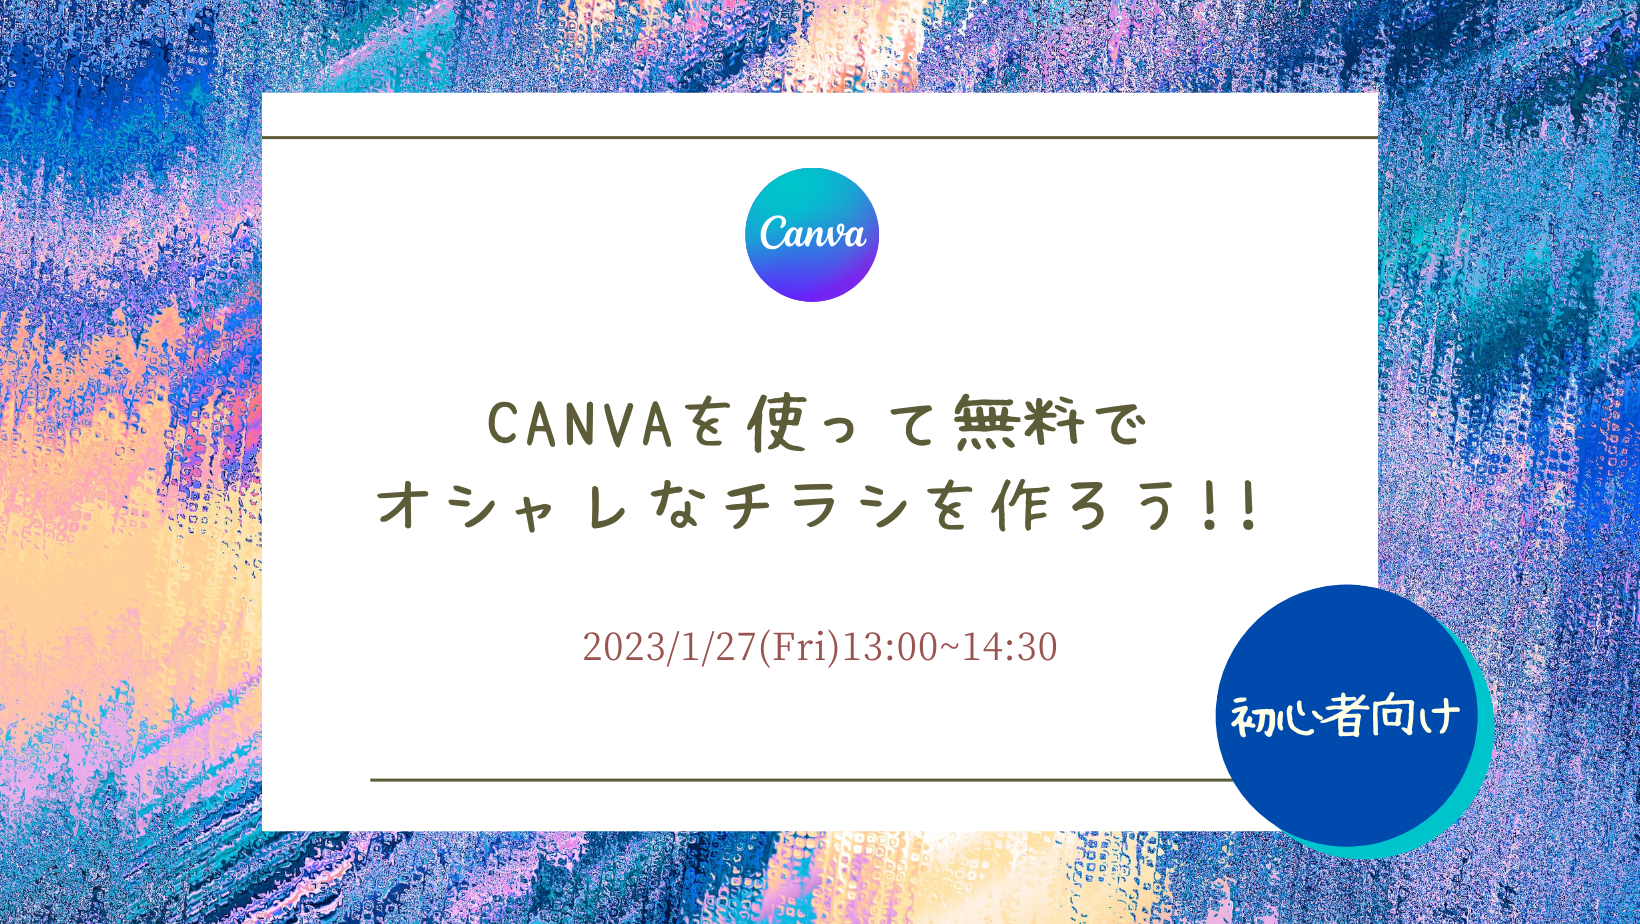 1/27　【初心者向け】 Canvaを使って無料でオシャレなチラシを作ろう!!